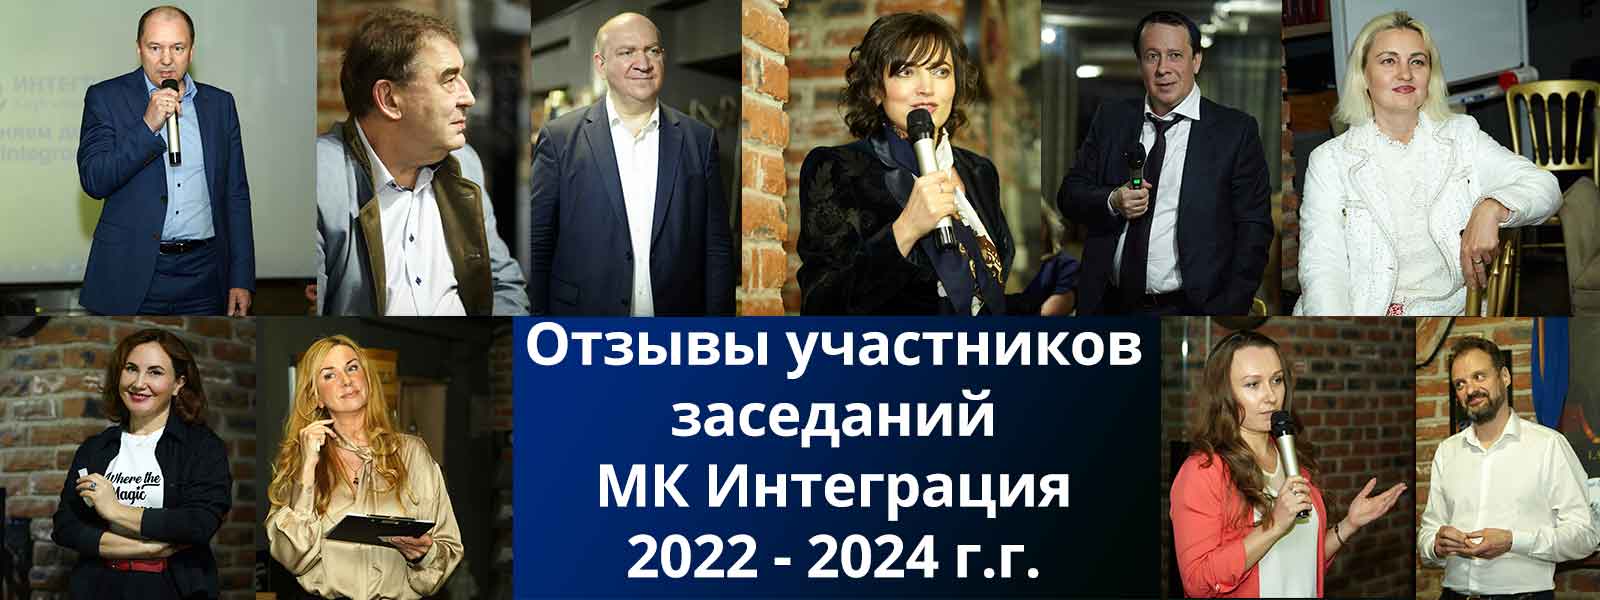 Отзывы участников заседаний МК Интеграция 2022 -2024 г.г.